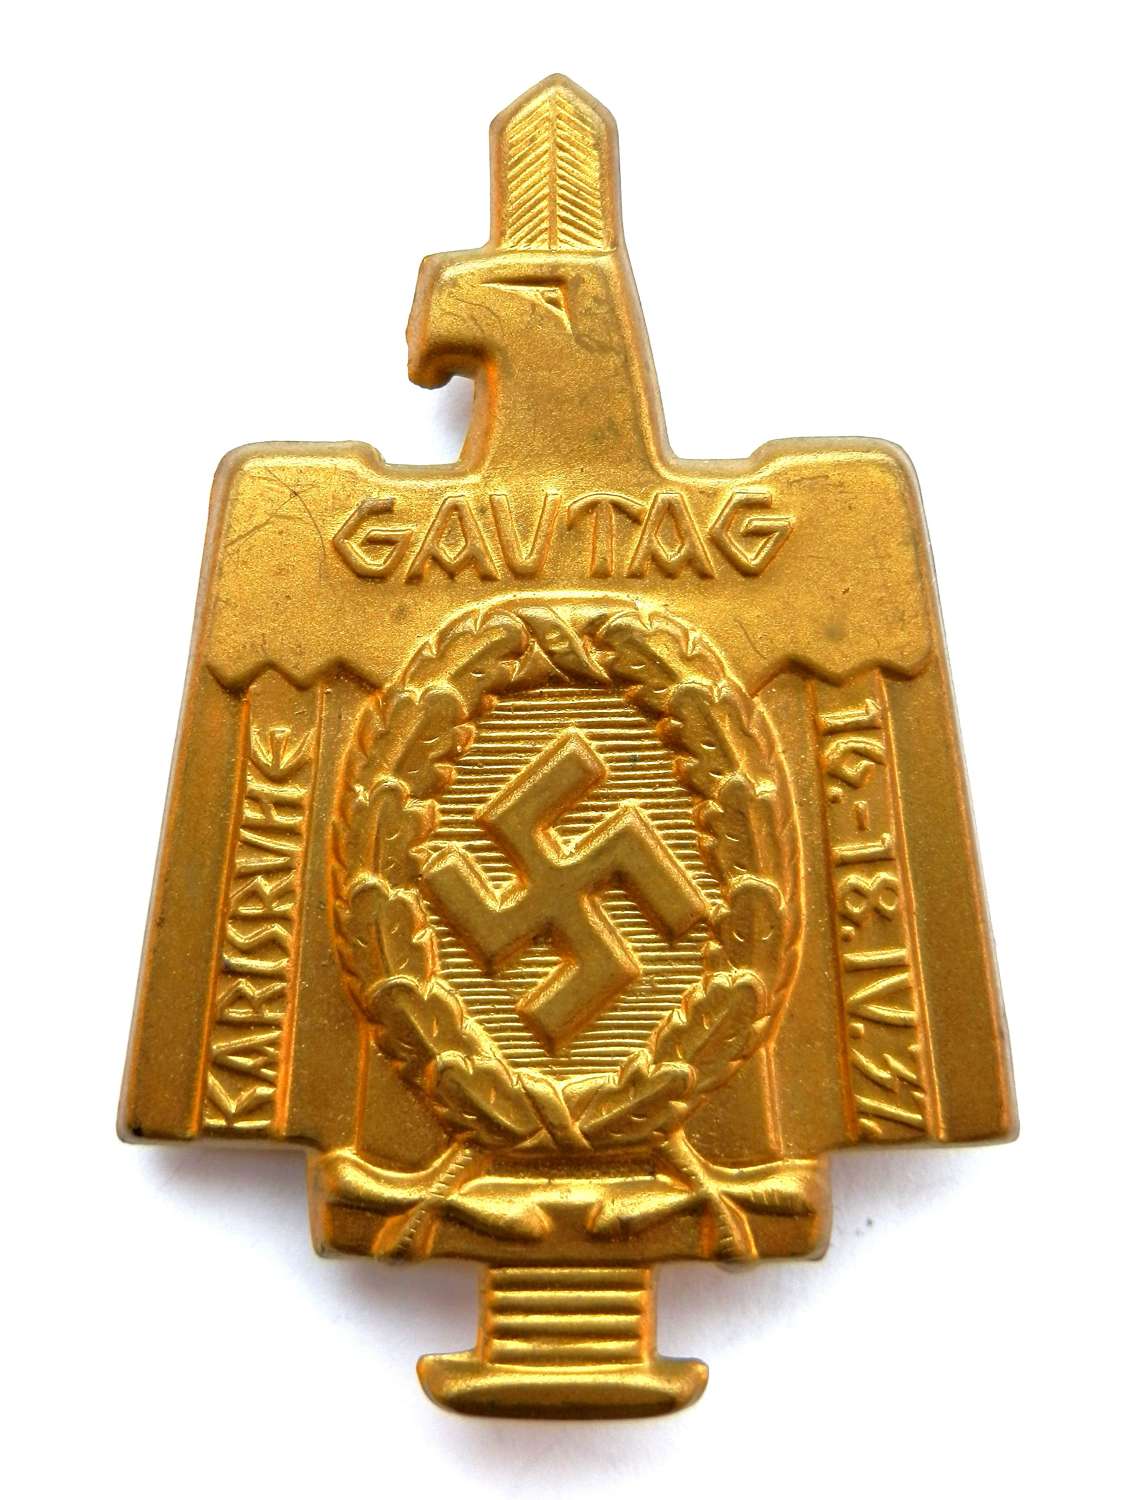 Gautag Karlsruhe 1937 Badge.